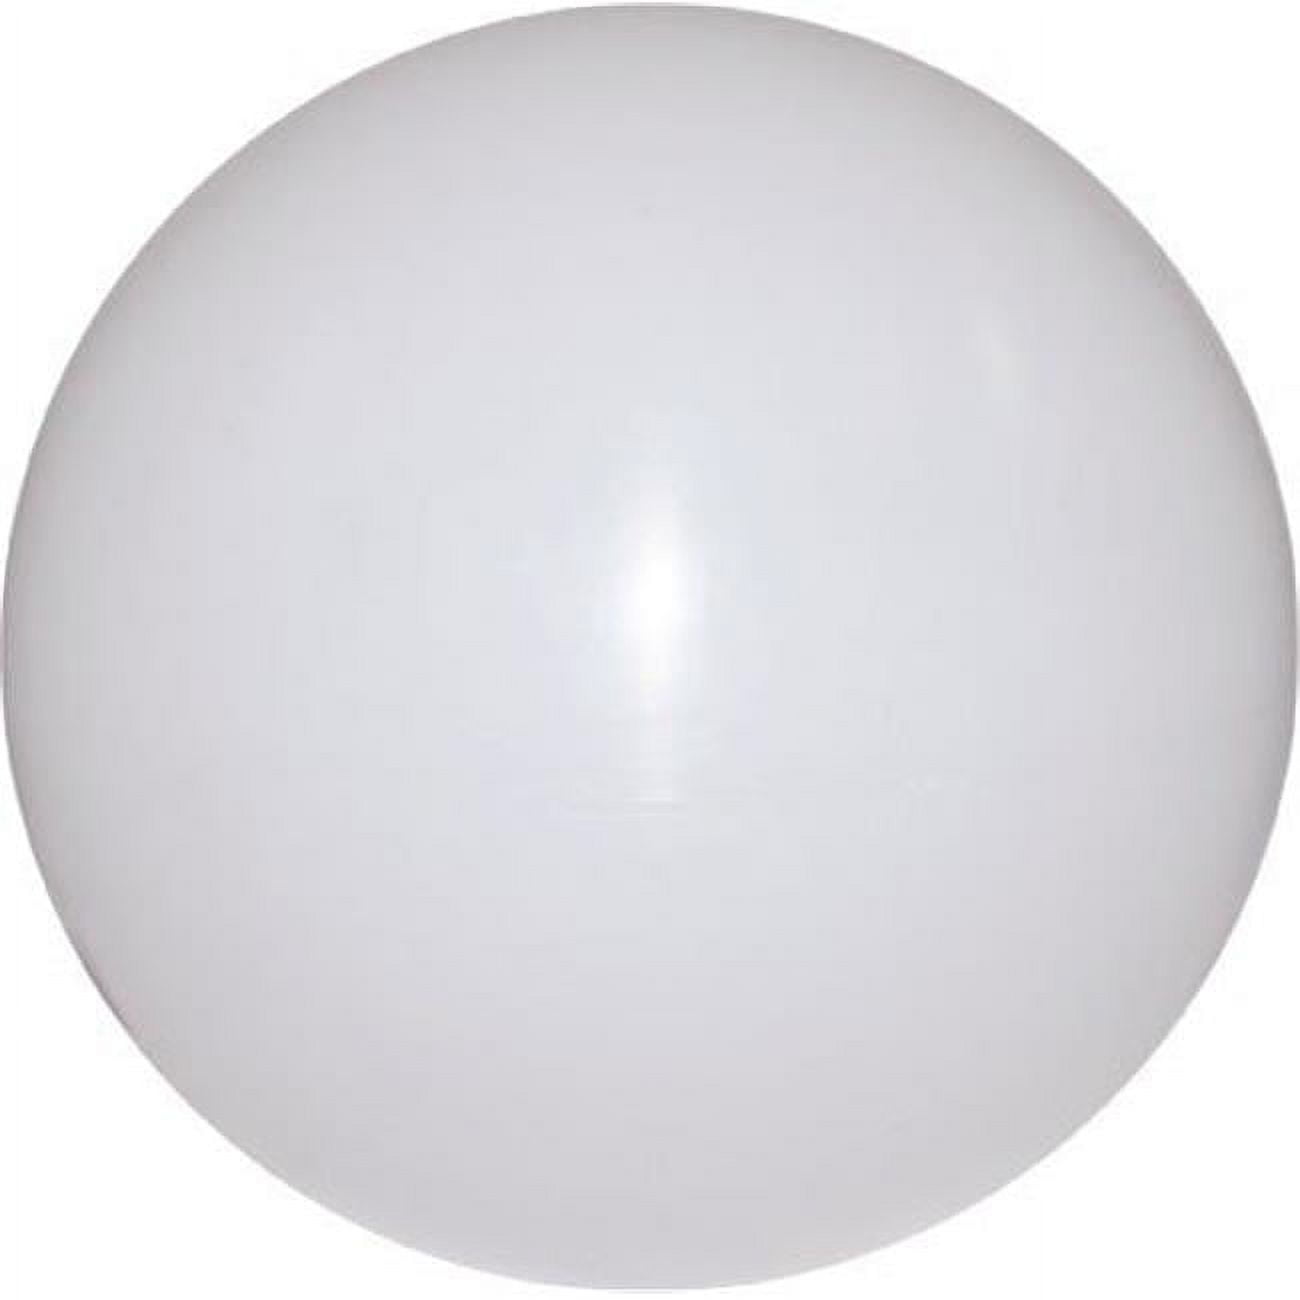 P-glb-65 18 X 5.25 In. Neckless Polyethylene White Globe